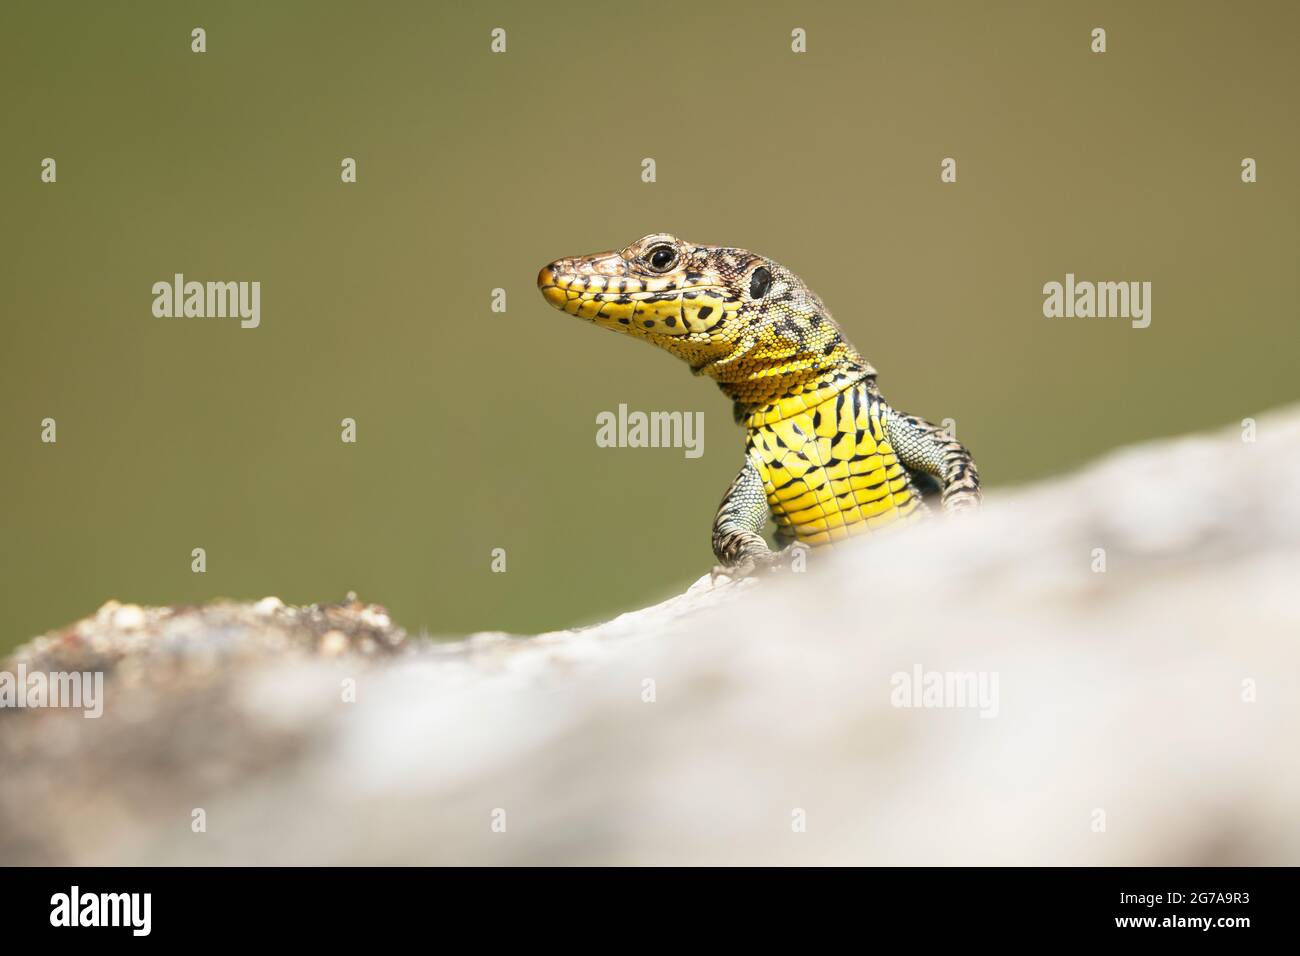 Greek Rock Lizard (Hellenolacerta graeca) remeñando al fotógrafo sobre el borde de una roca. Foto de stock